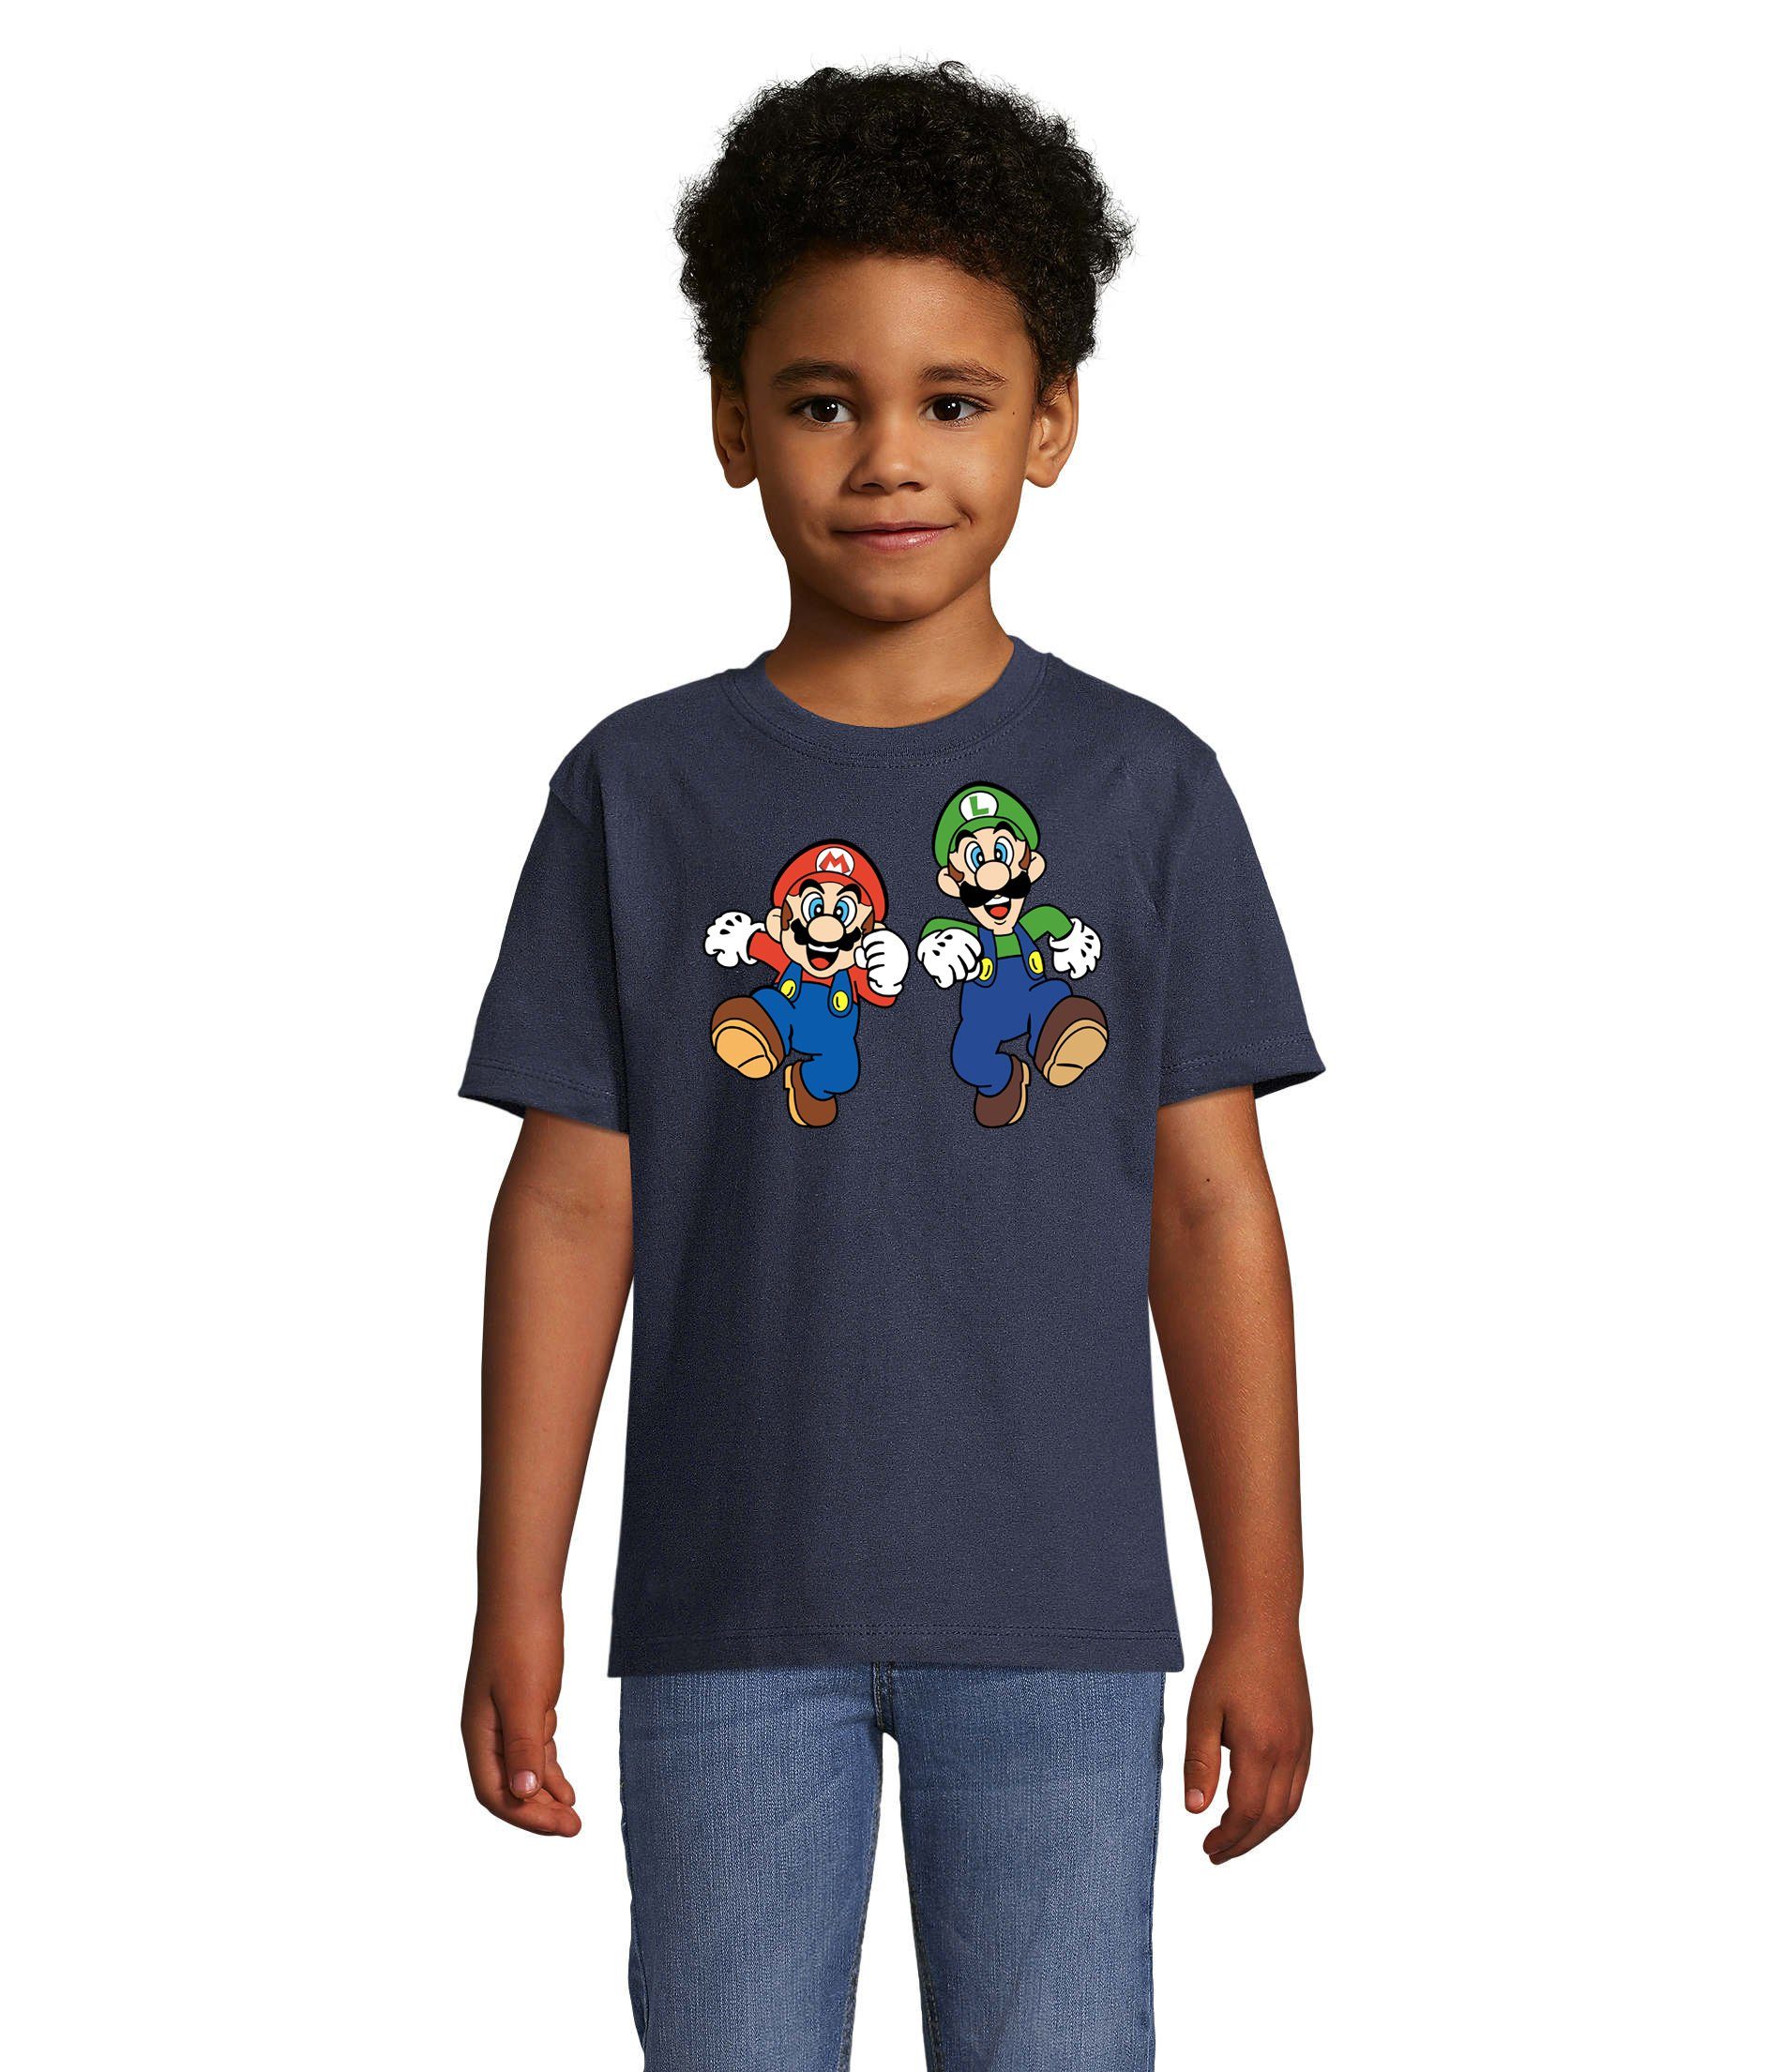 Blondie & Luigi & Nintendo Kinder Mario Brownie Bowser T-Shirt Navyblau Yoshi Konsole Game Gamer